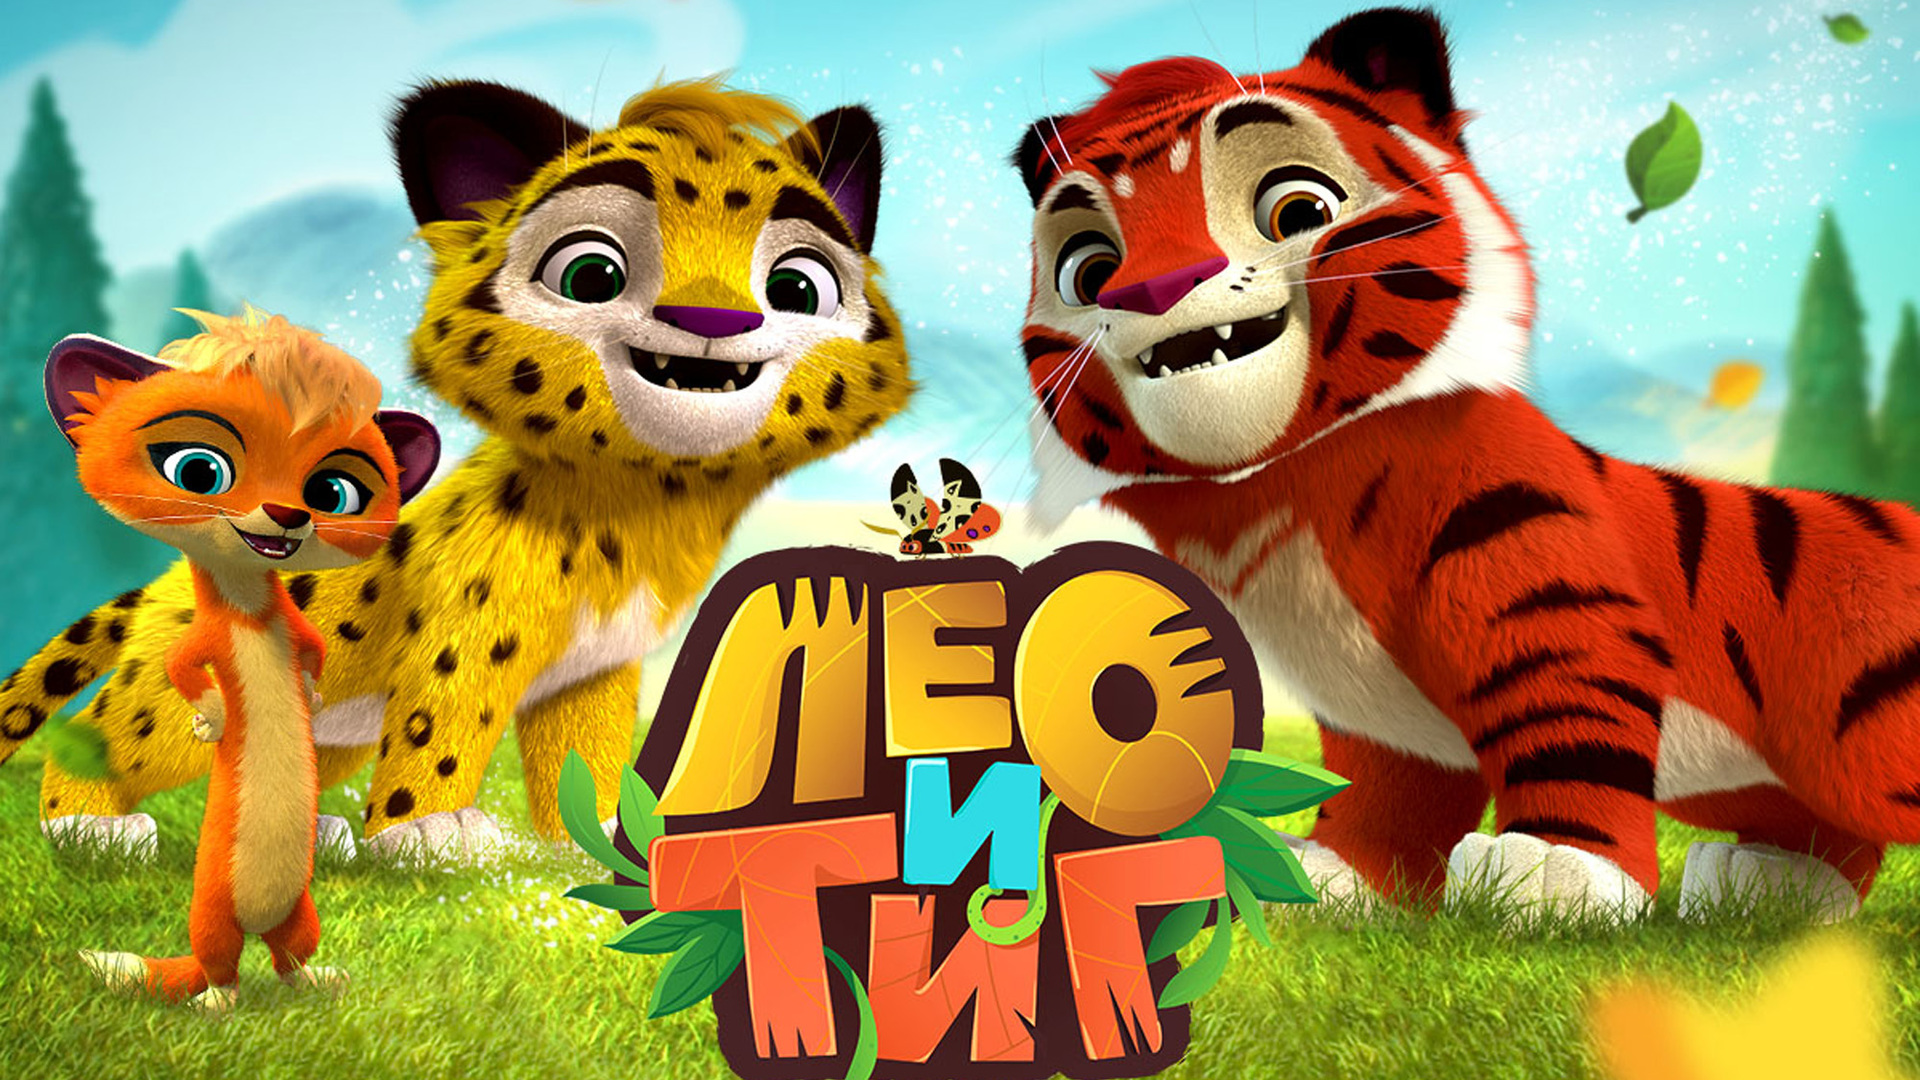 Лео и Тиг лого